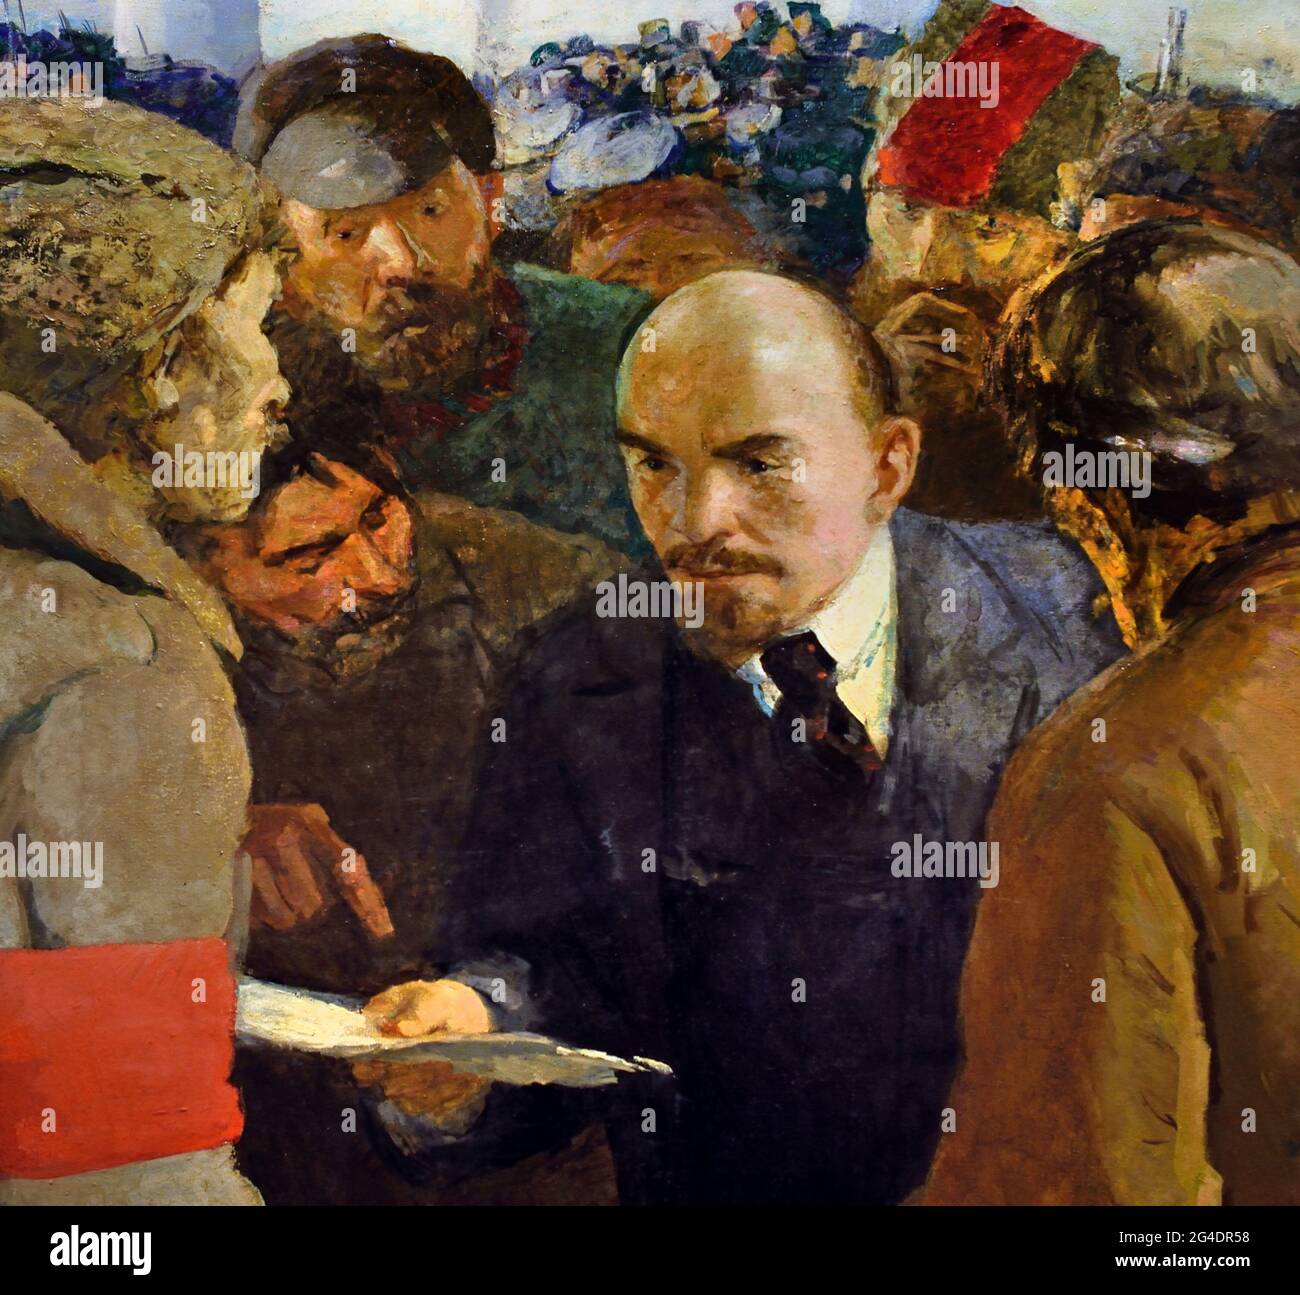 Vladimir Lénine au deuxième Congrès des Soviets parmi les paysans délégués 1935-1936 par Gerasimov ( Révolution russe 1917 - 1945 ) Lénine Staline propagande russe - publicité Russie URSS Banque D'Images